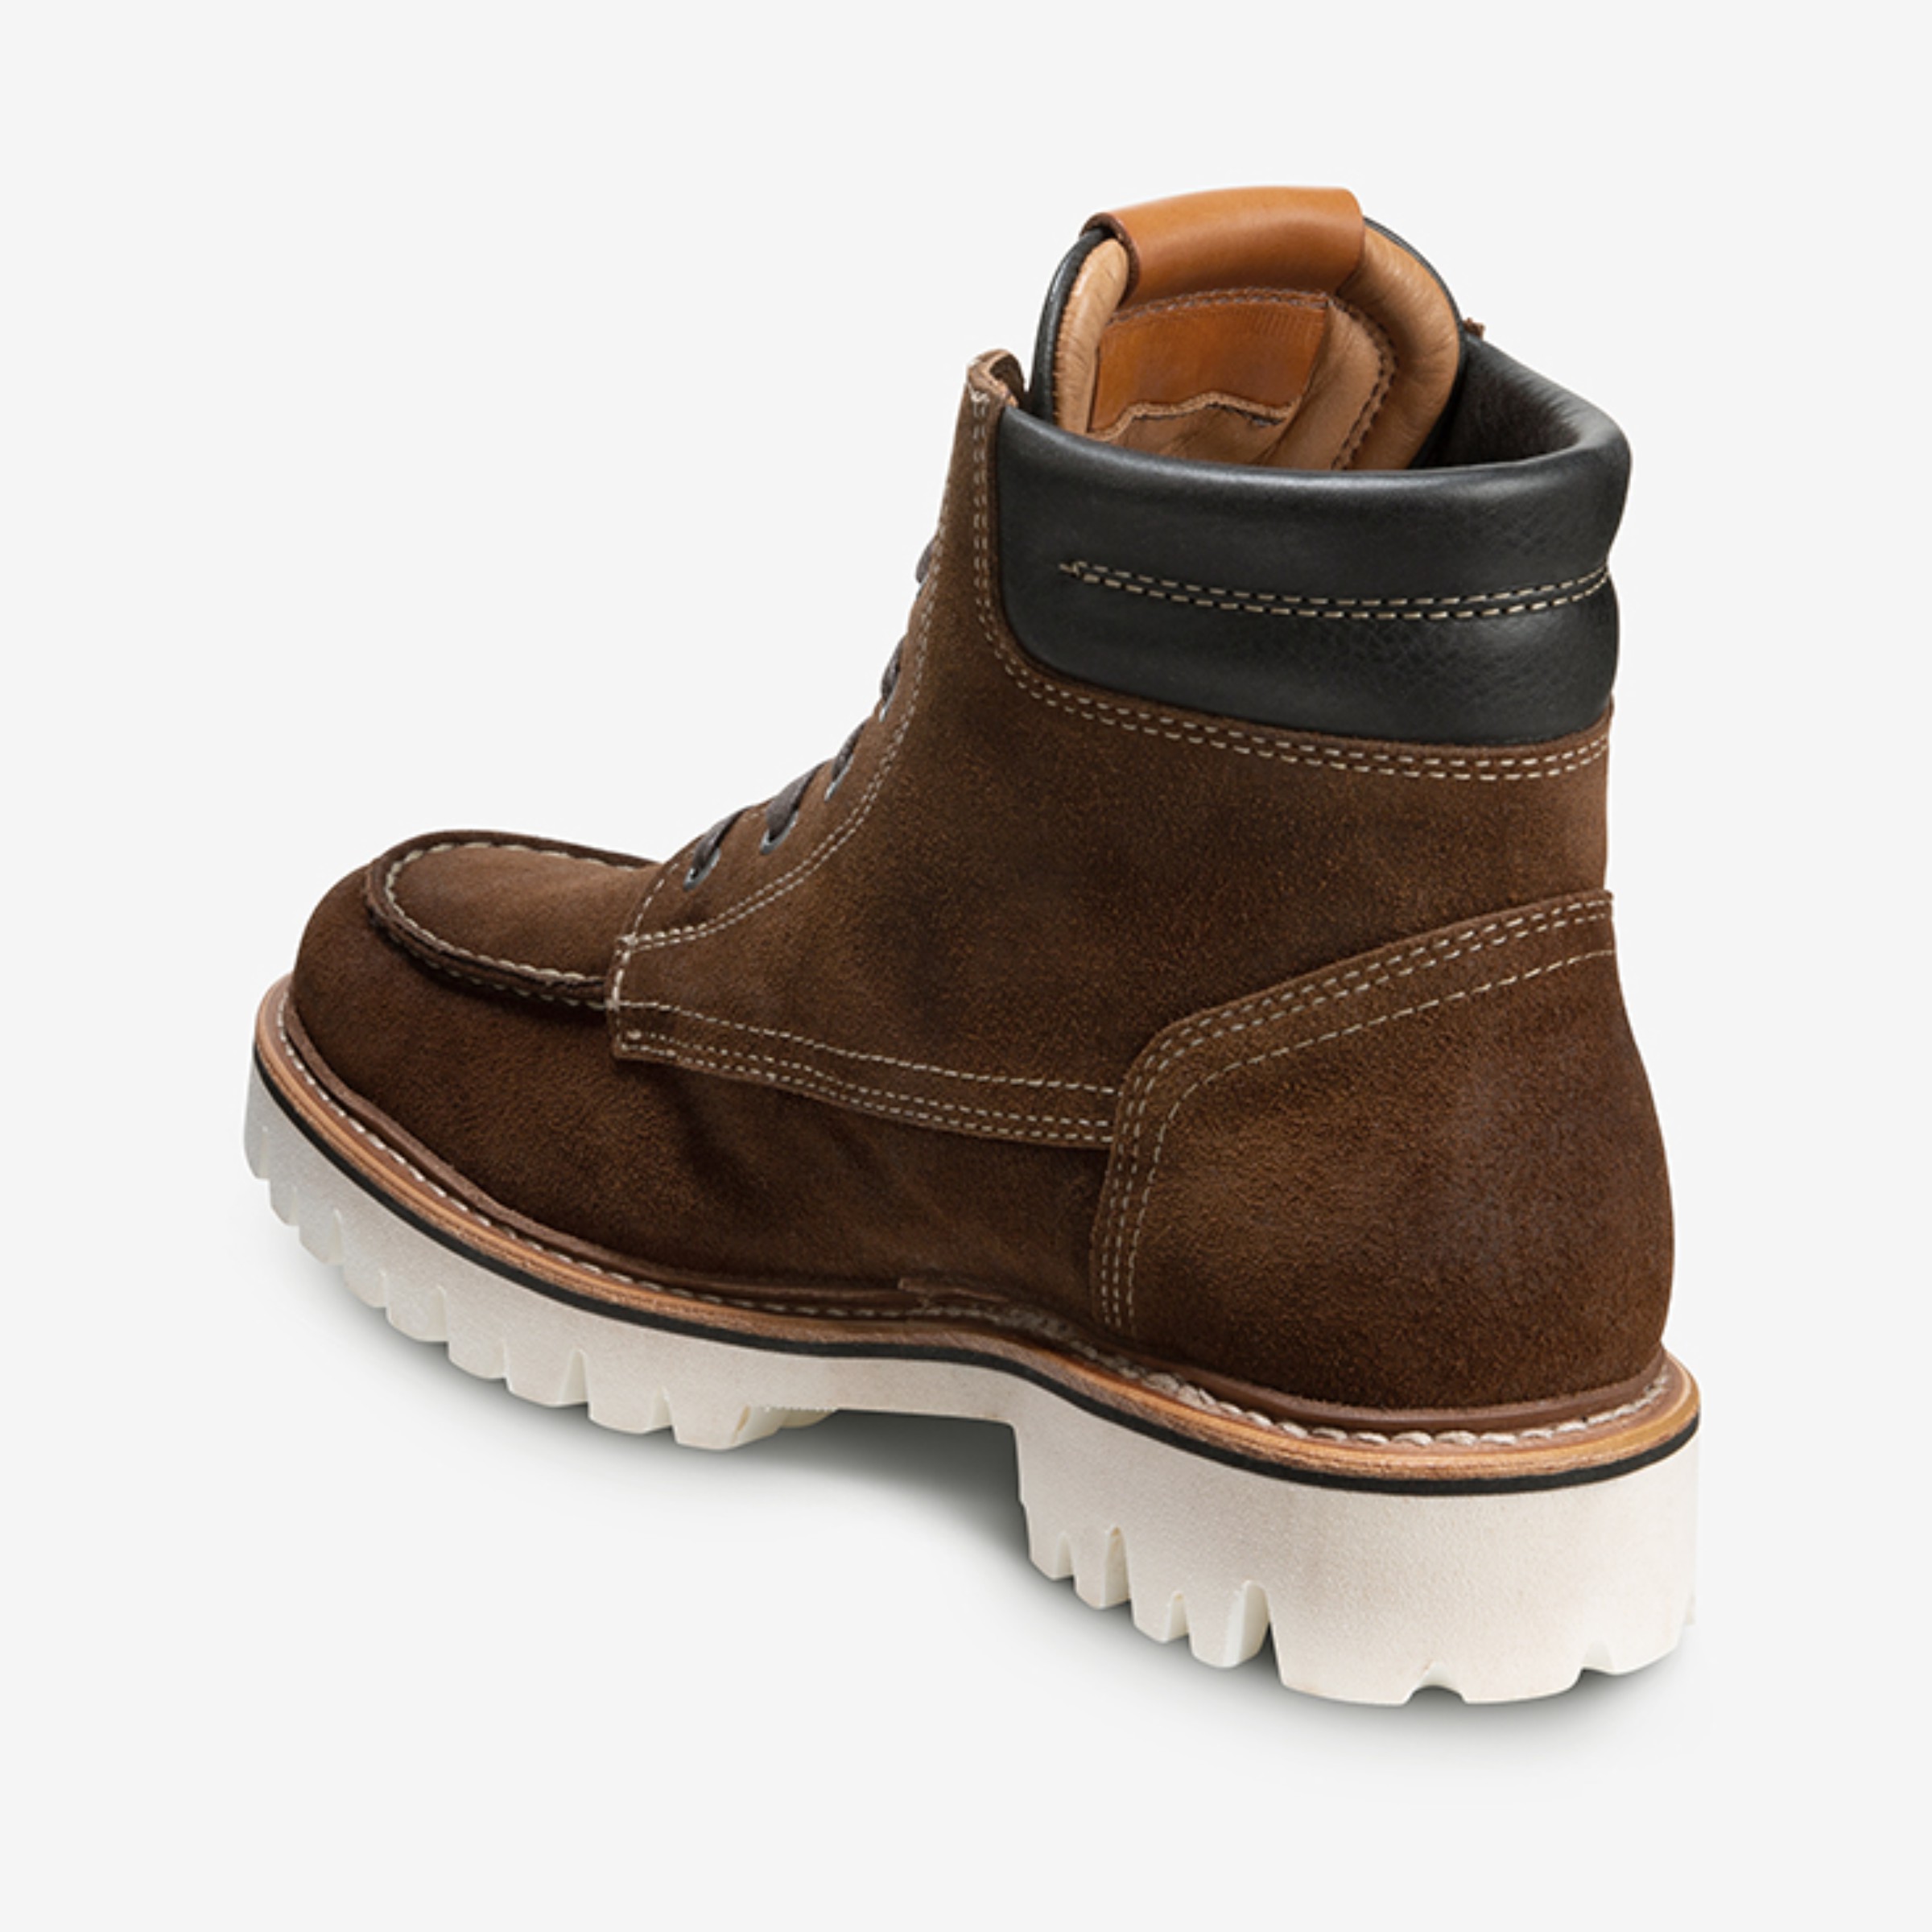 Silverlake Lace-up Boot | Men's Boots | Allen Edmonds